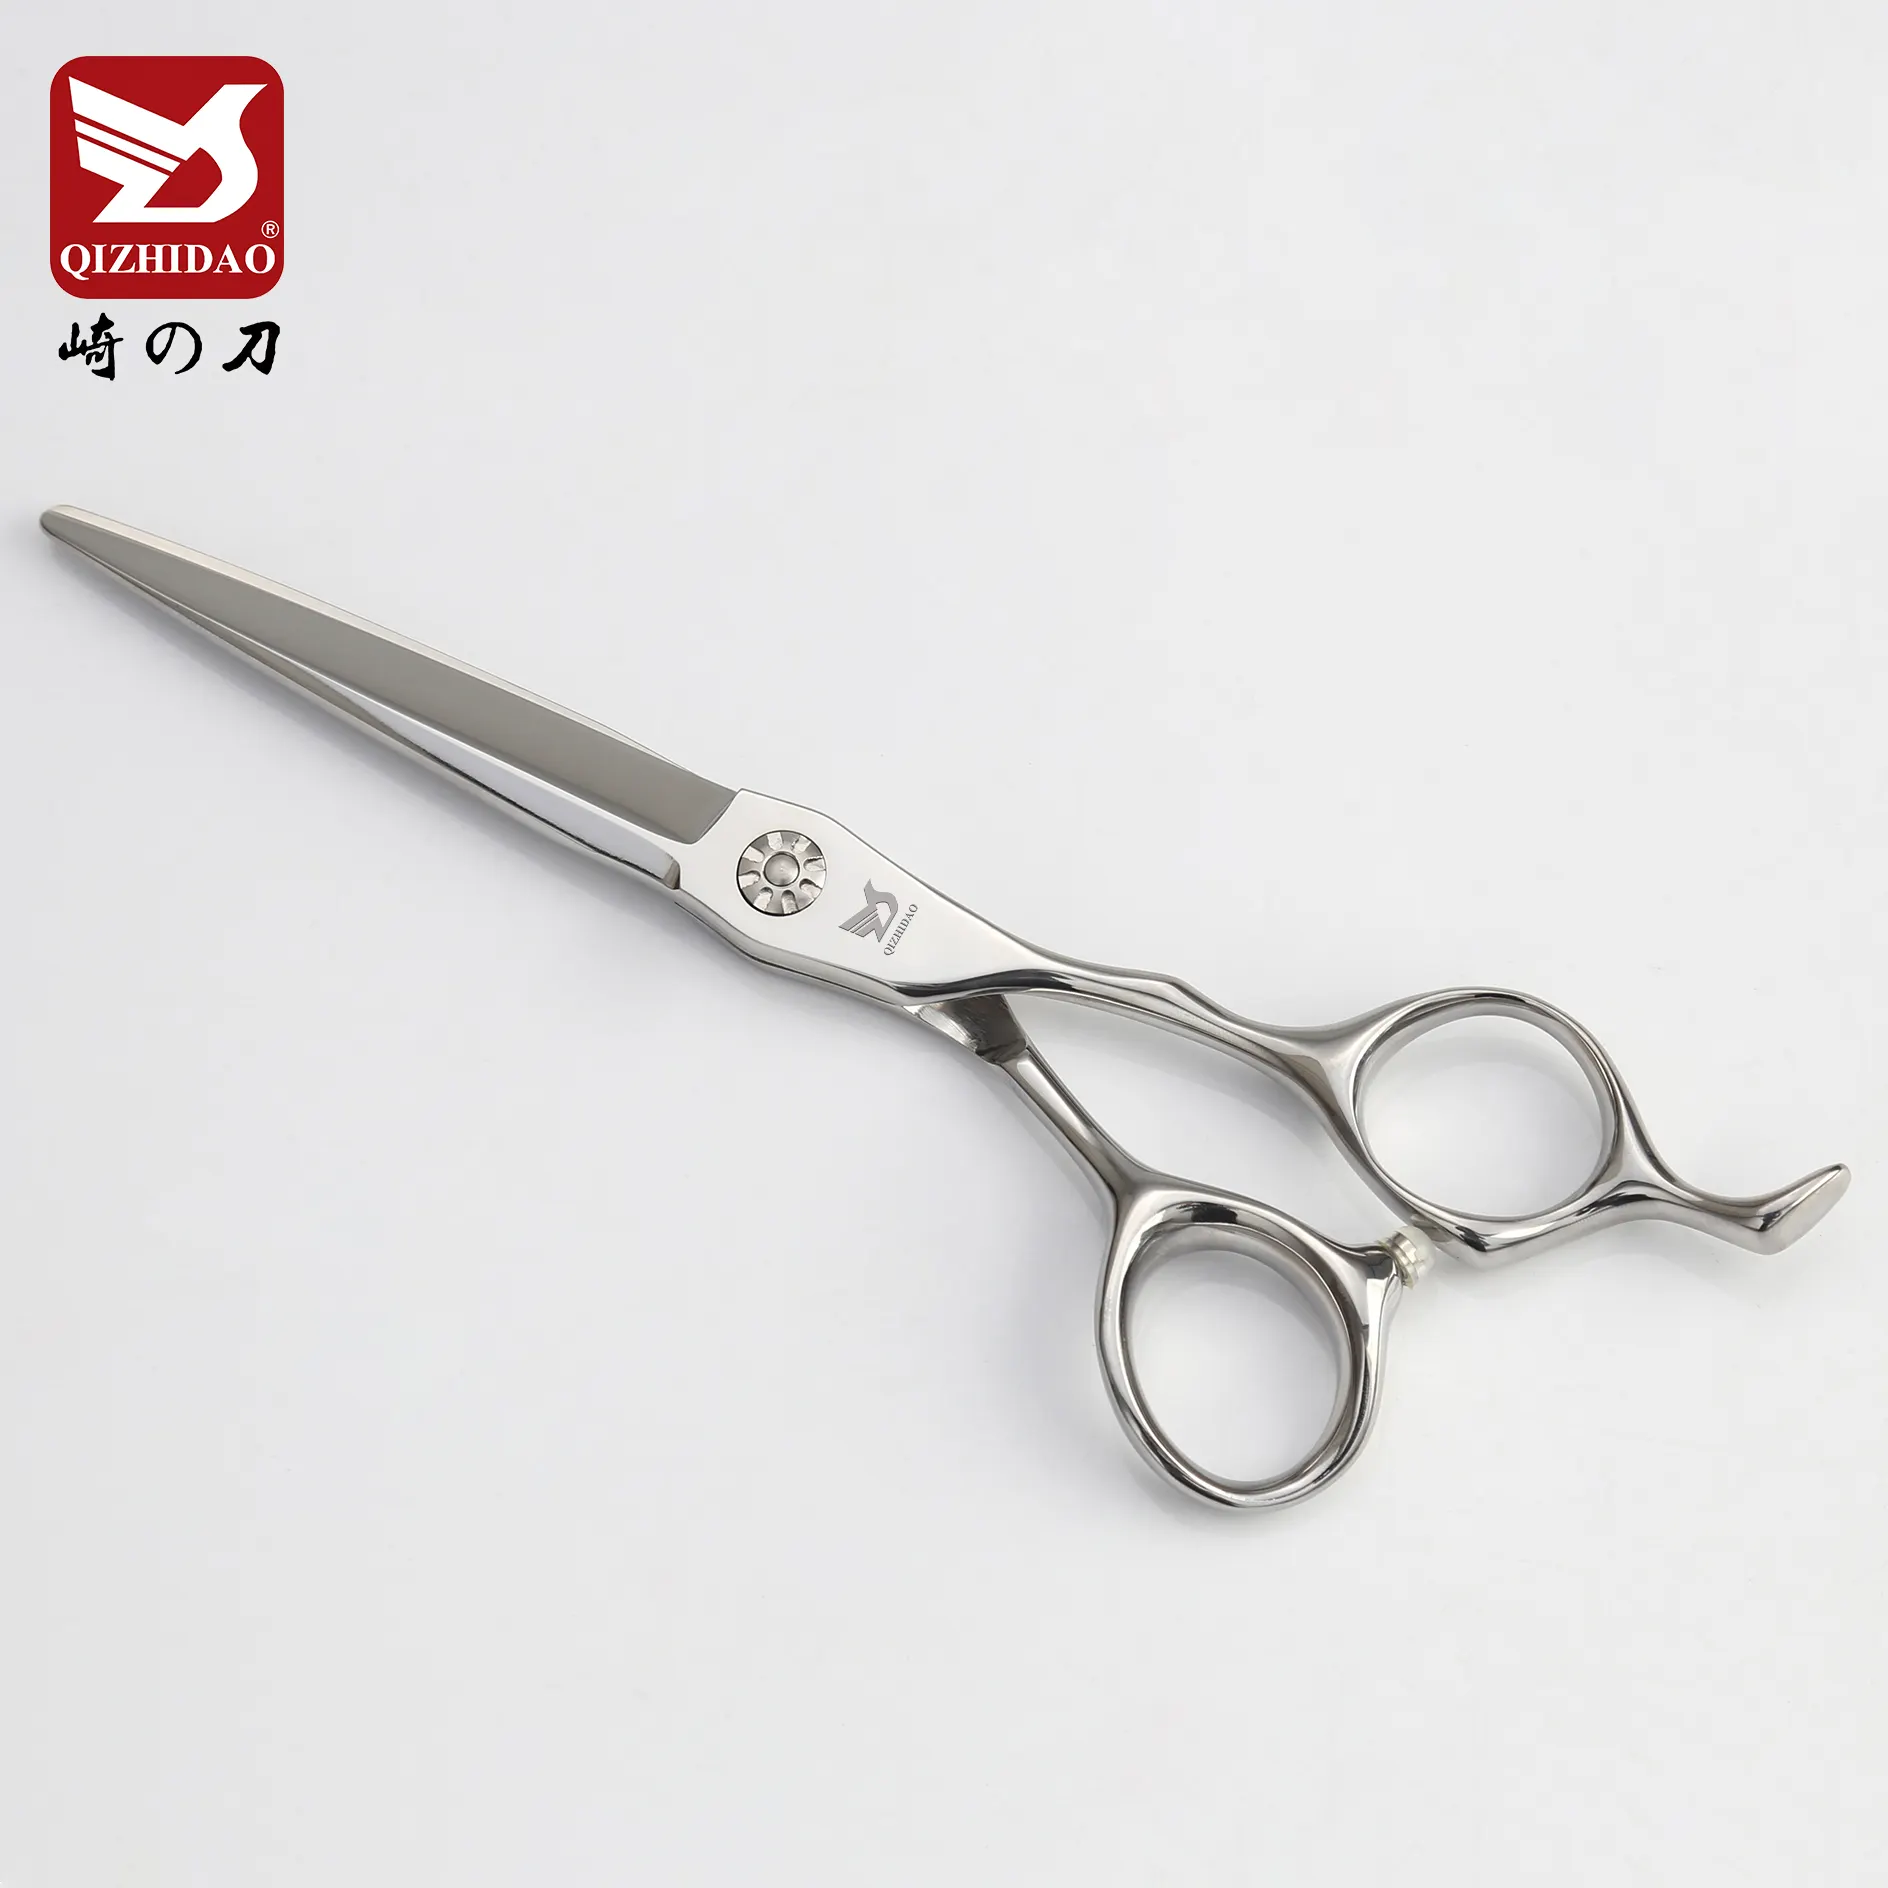 Tesoura de cabeleireiro profissional para corte de cabelo, tesoura de aço japonesa 440c para salão de beleza, barbeiro